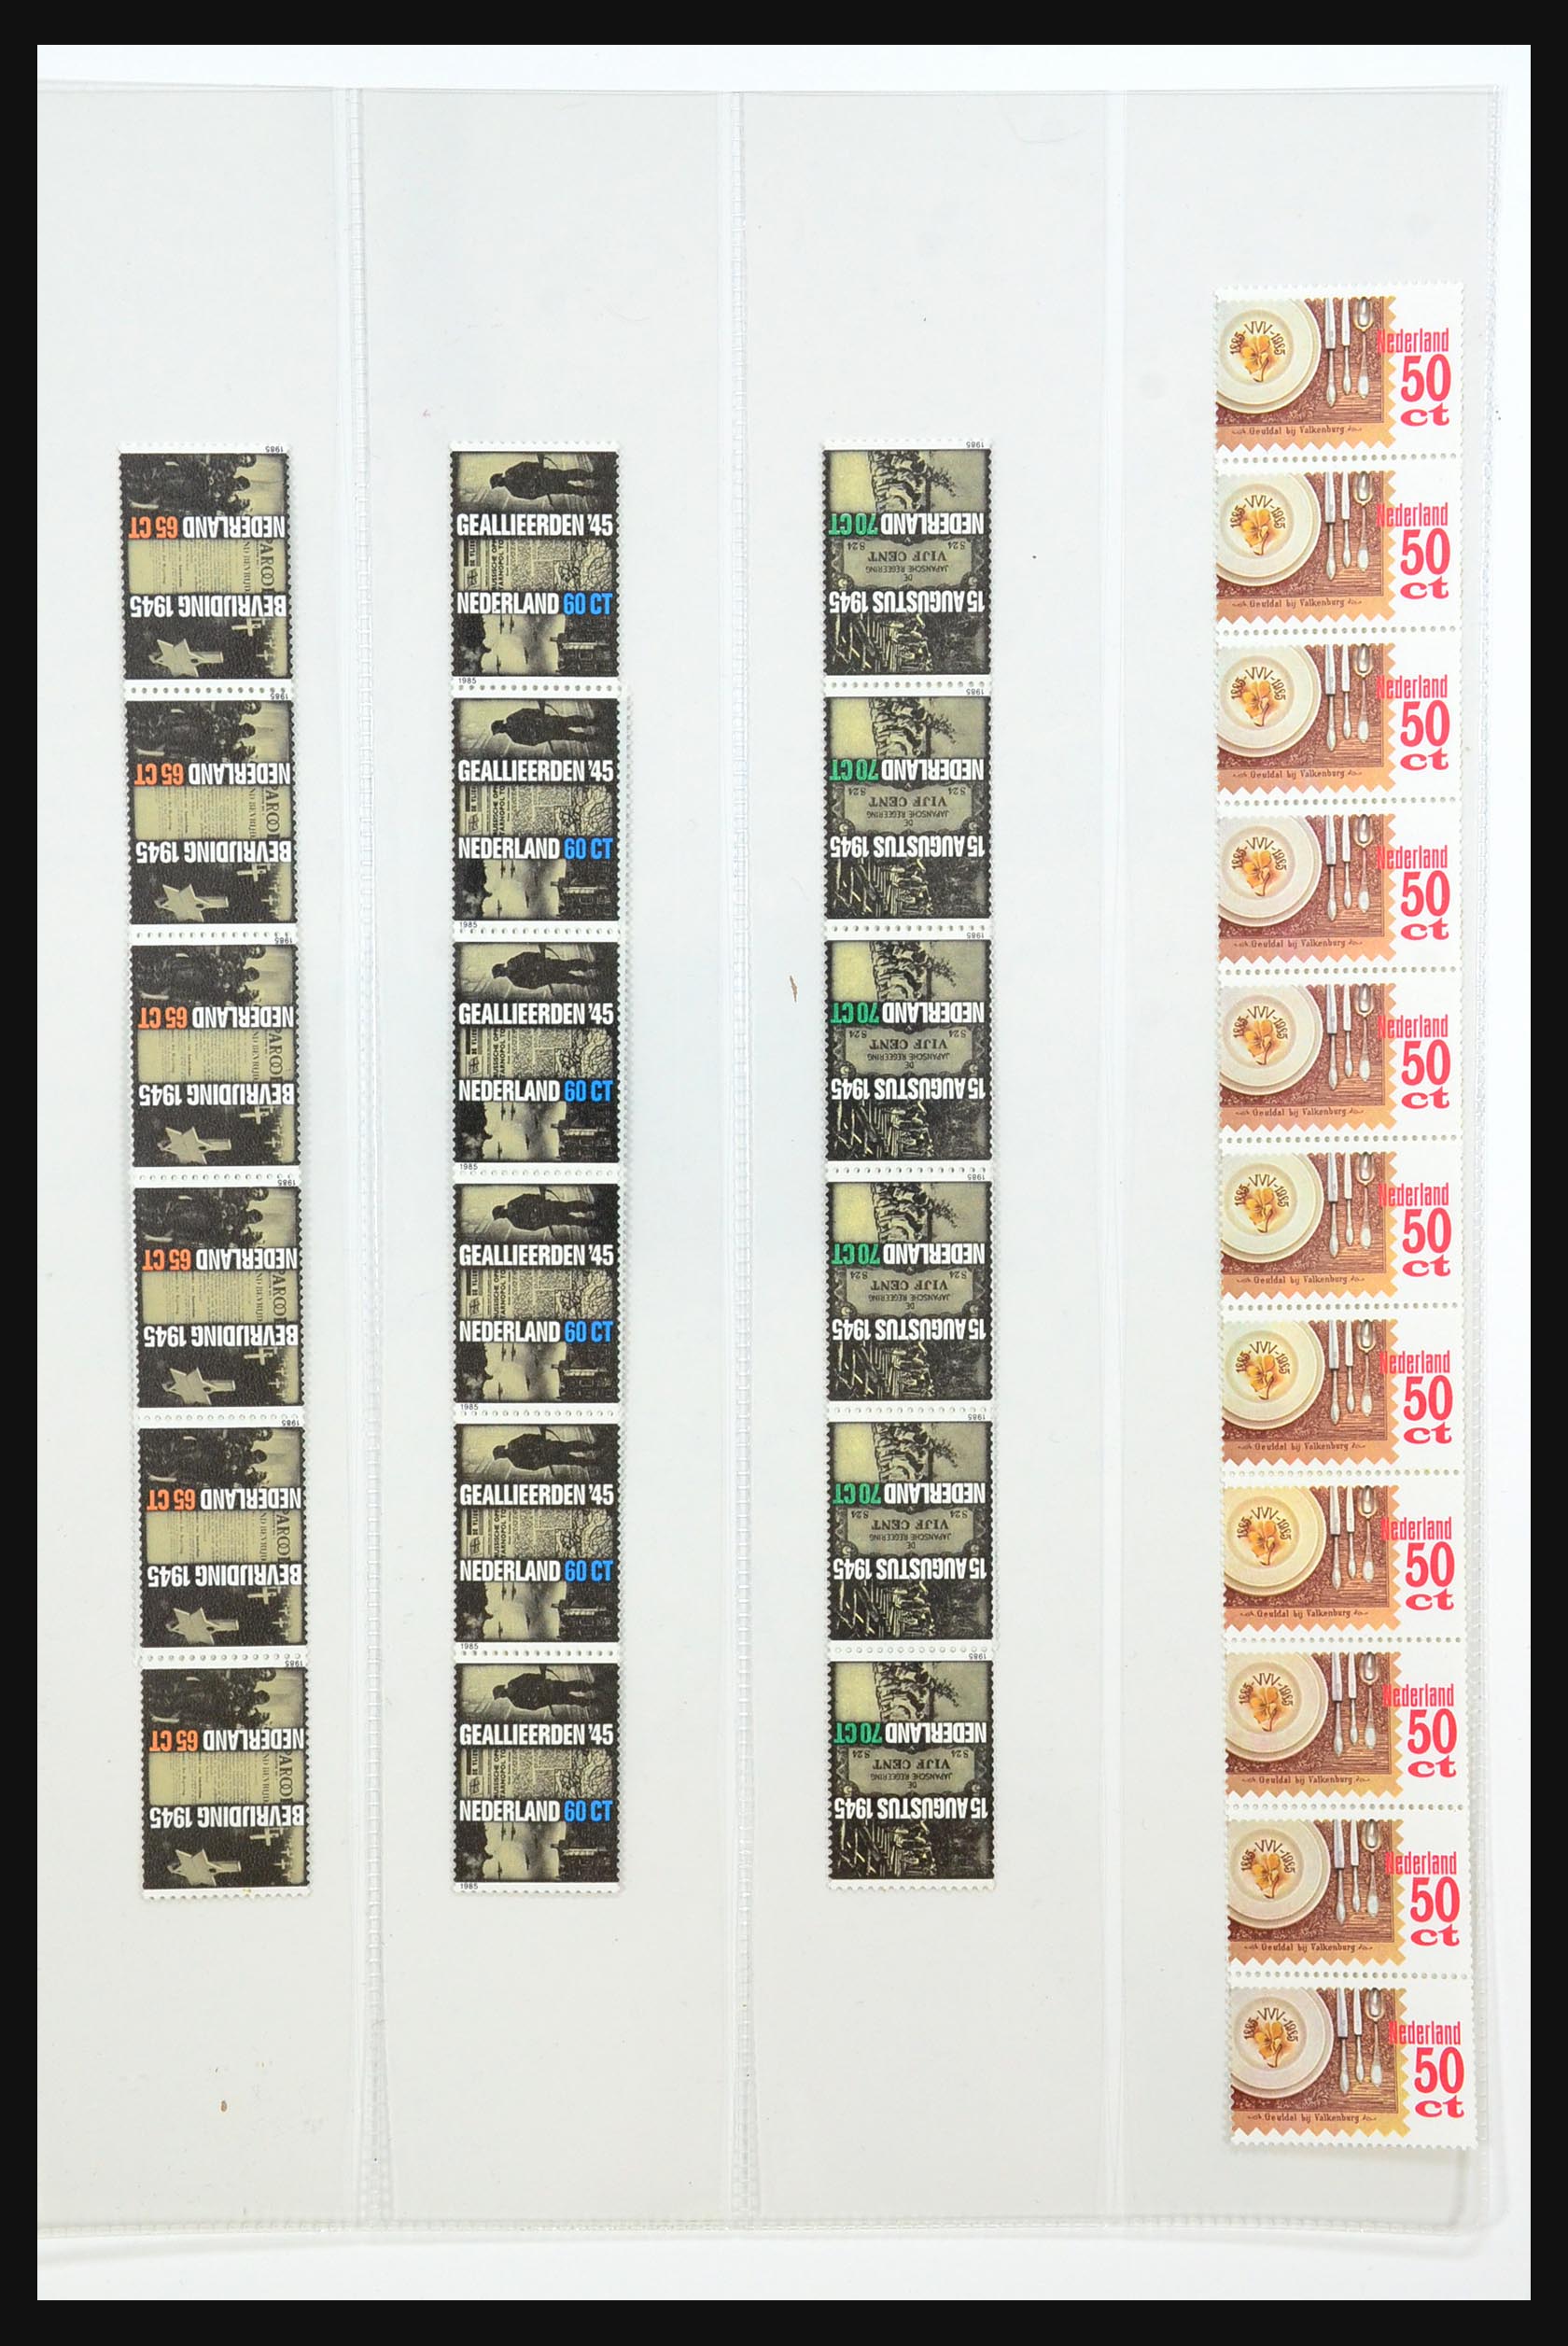 31463 033 - 31463 Netherlands coilstamps 1953-1998.